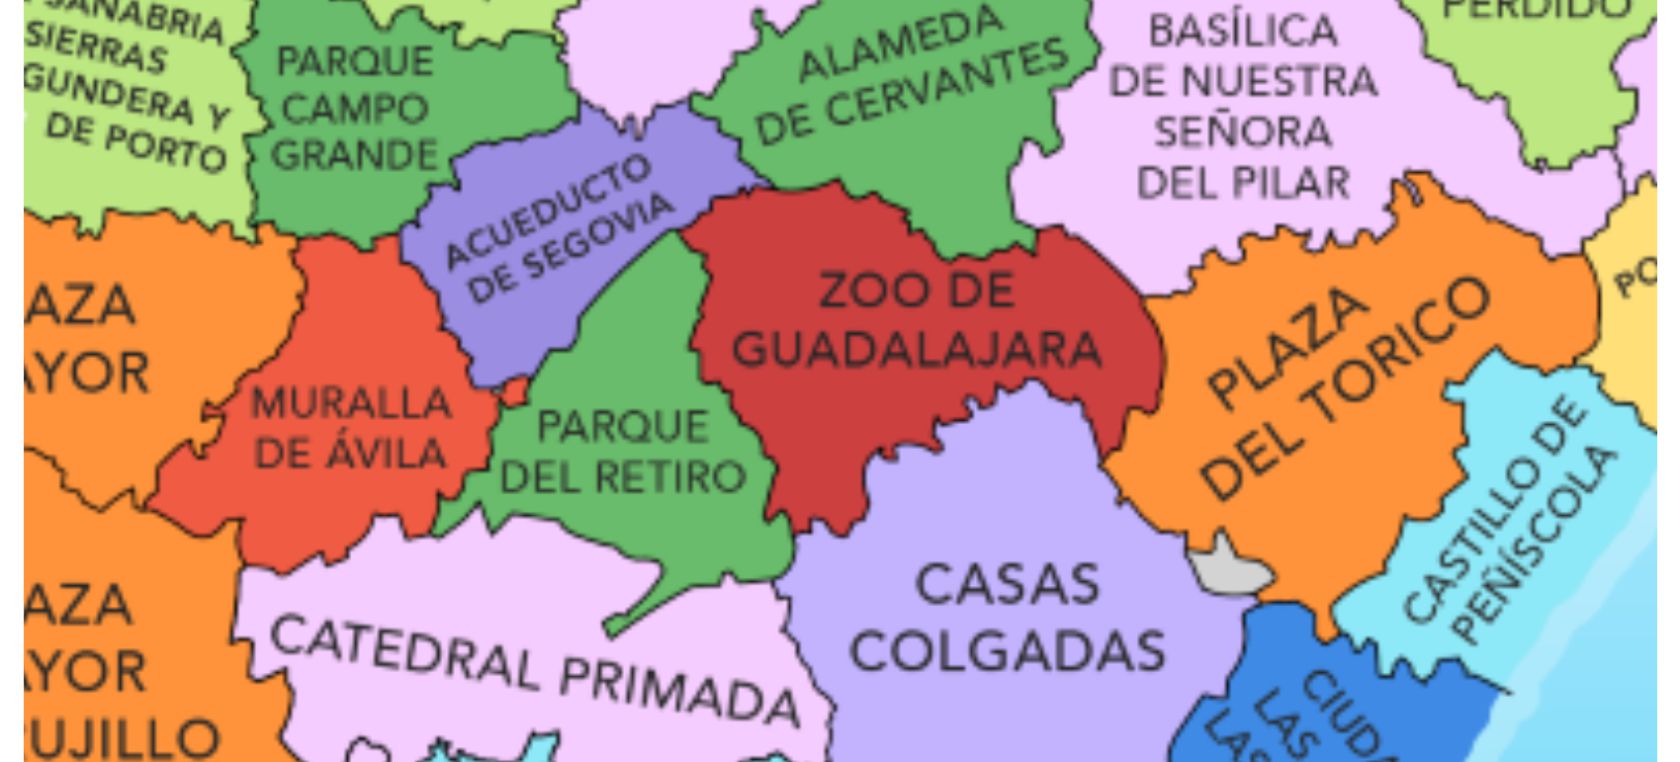 Estos son los monumentos y atracciones turísticas más populares de cada provincia de España